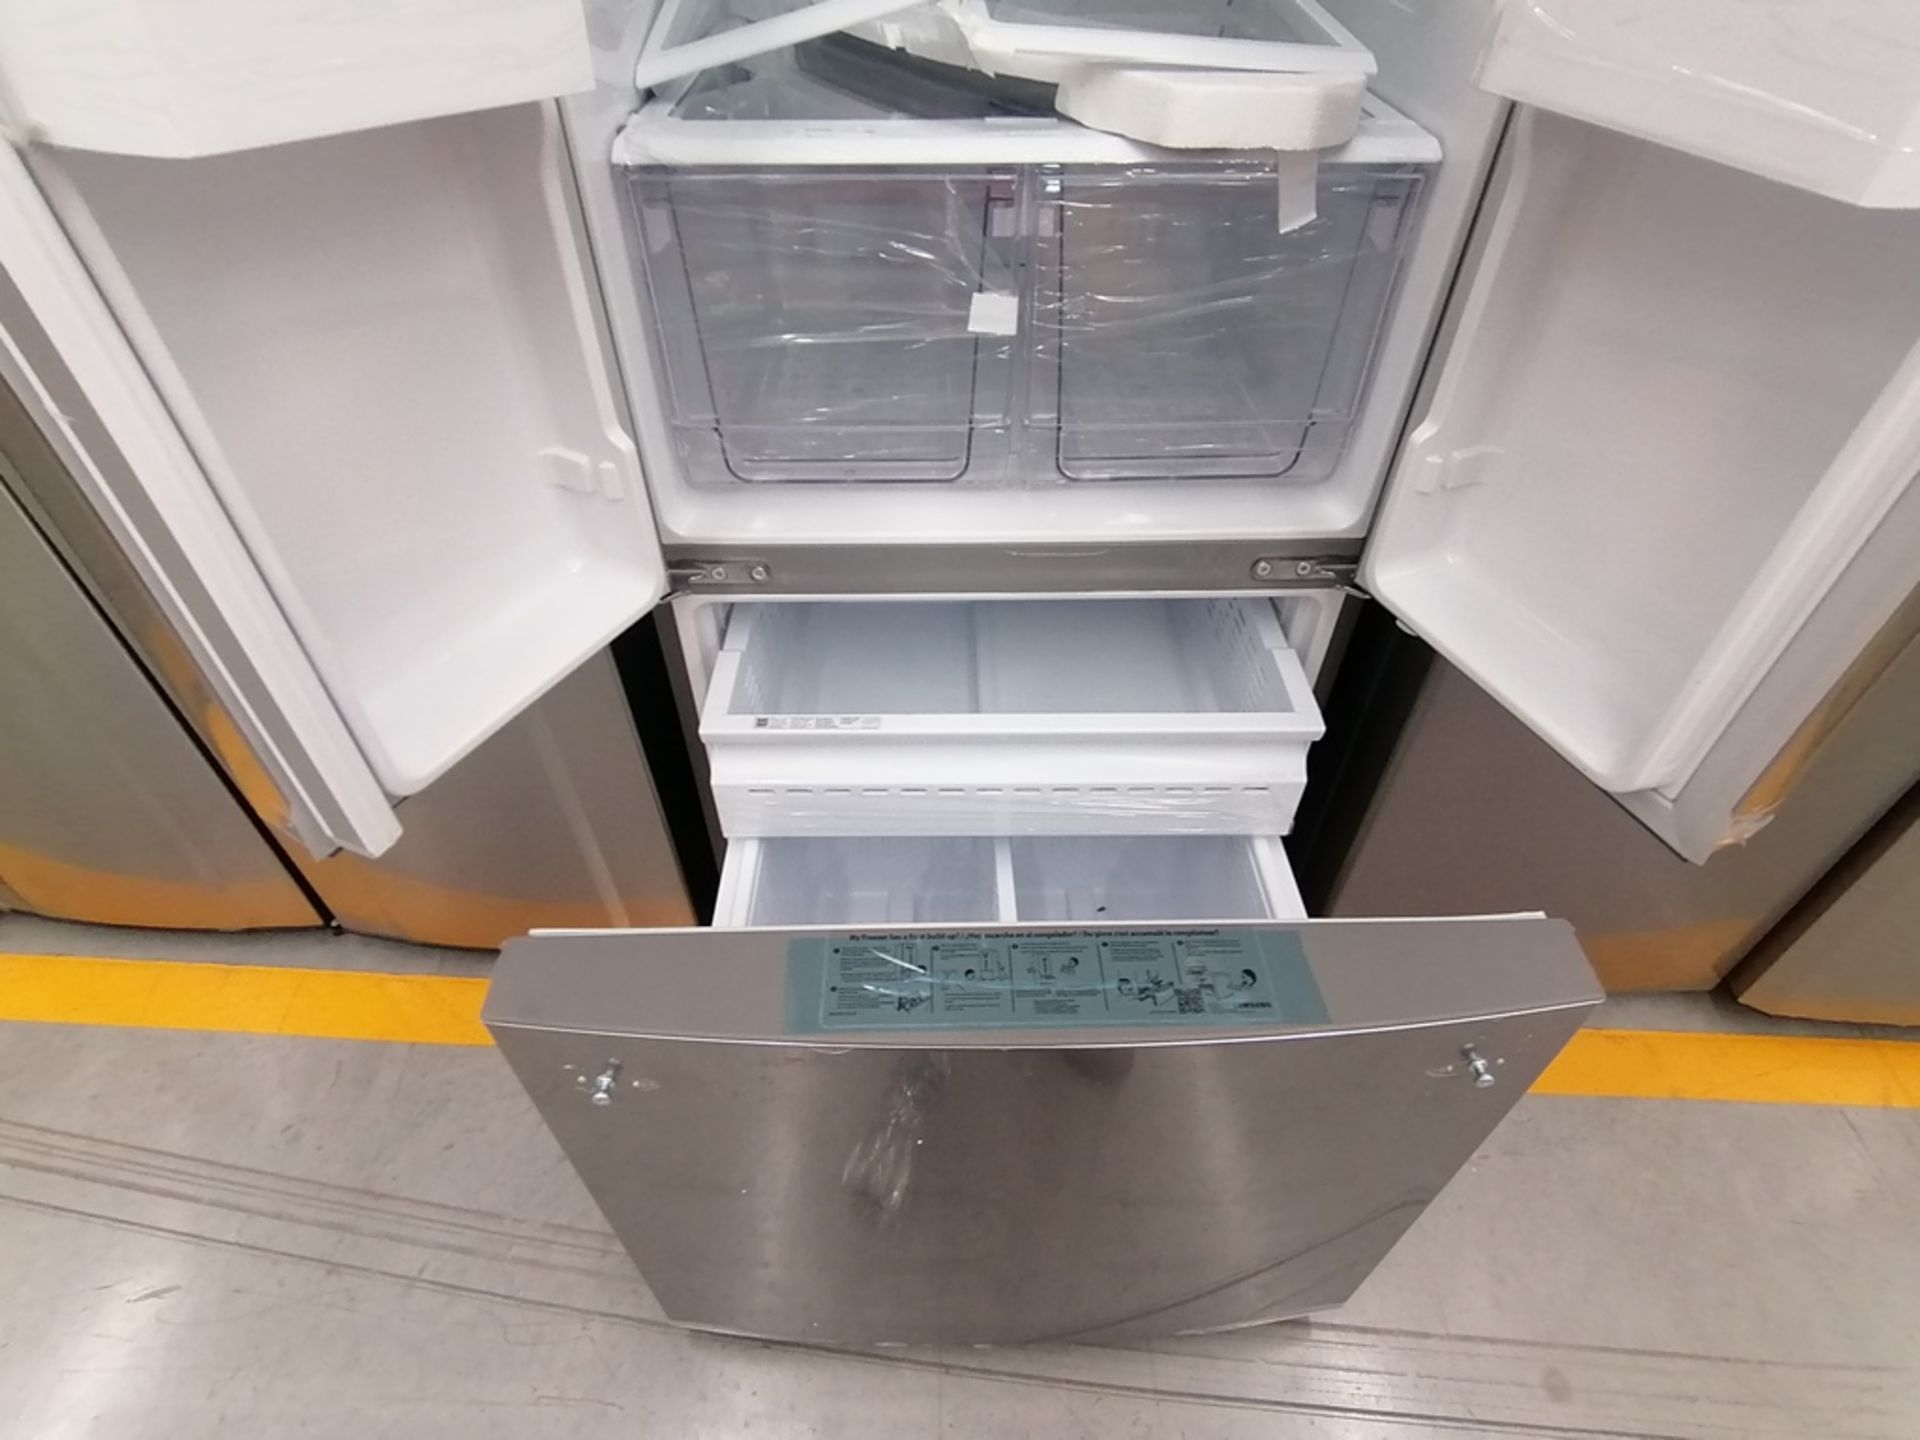 Lote de 2 Refrigeradores contiene: 1 Refrigerador con dispensador de agua, Marca Winia, Modelo DFR- - Image 13 of 15